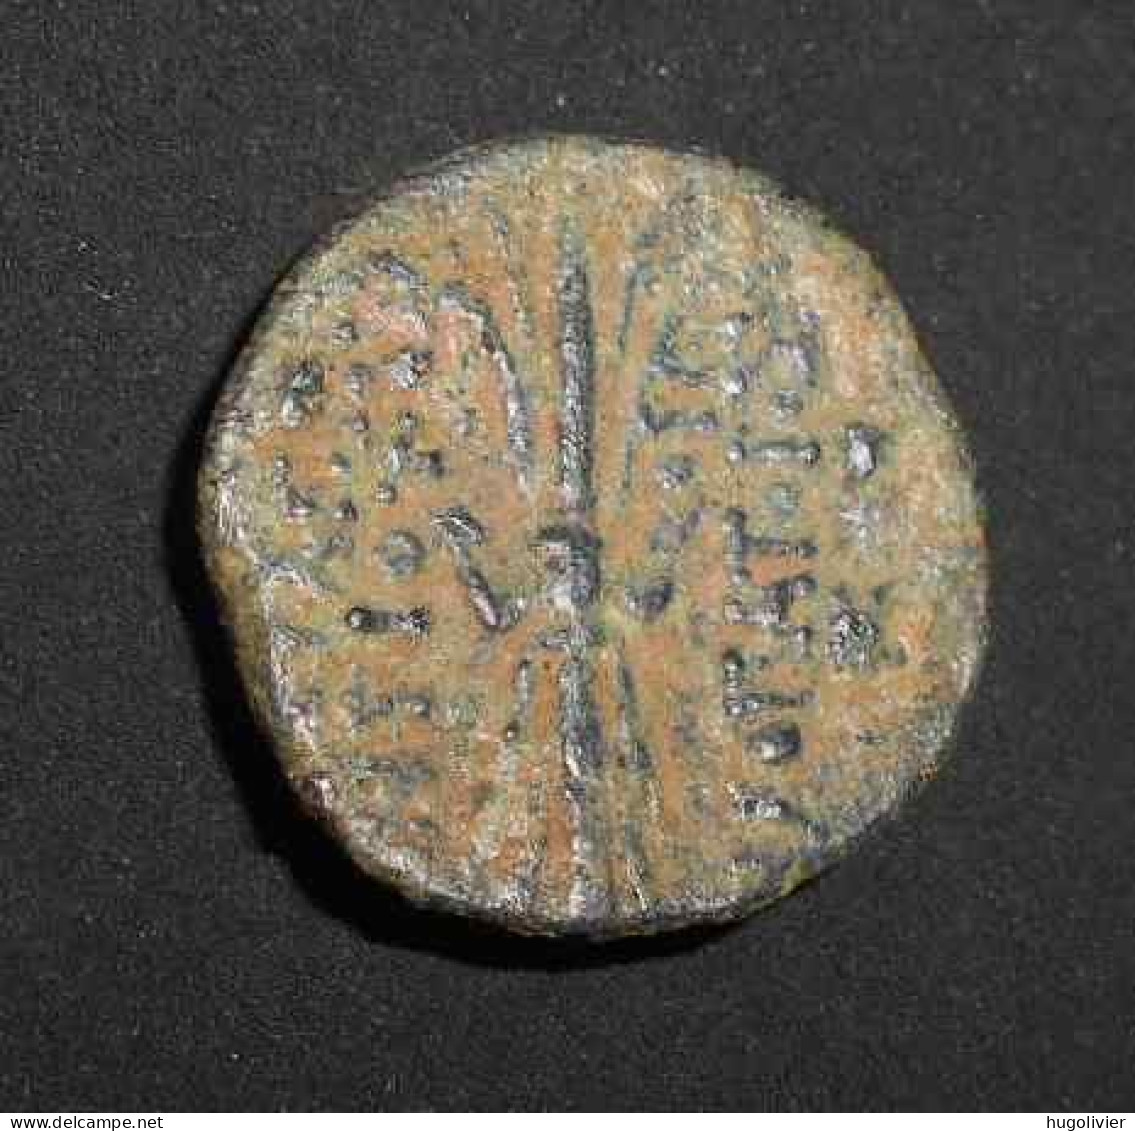 Ancienne Monnaie Séleucide Antiochos IX Syrie -114 à -95 AJC Poids: 6,06 Gr Diamètre: 1,8 Cm - Orientale